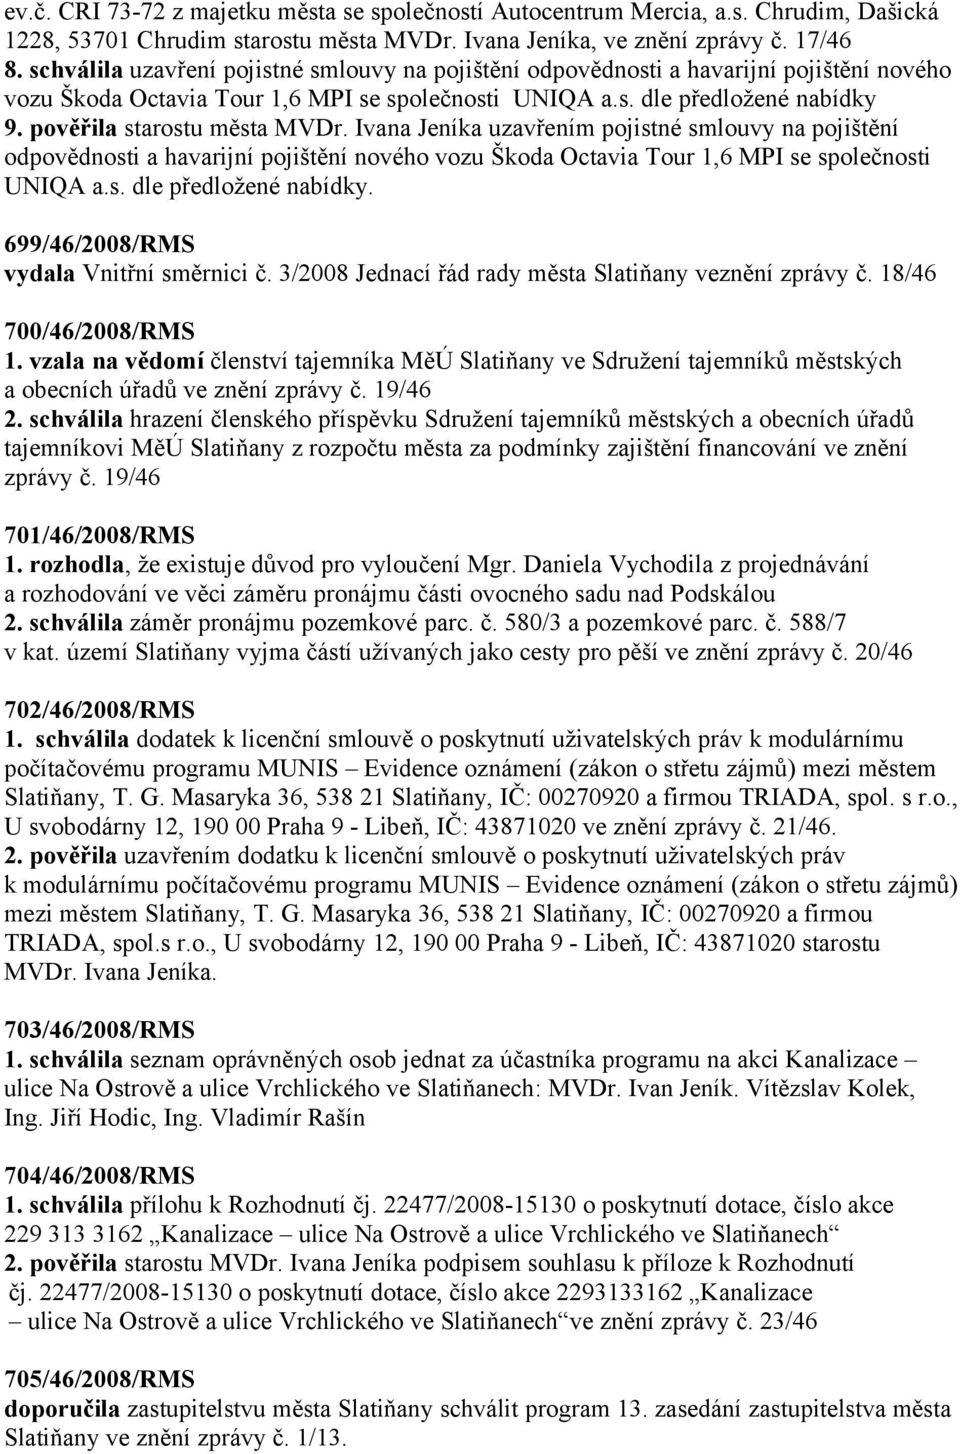 pověřila starostu města MVDr. Ivana Jeníka uzavřením pojistné smlouvy na pojištění odpovědnosti a havarijní pojištění nového vozu Škoda Octavia Tour 1,6 MPI se společnosti UNIQA a.s. dle předložené nabídky.